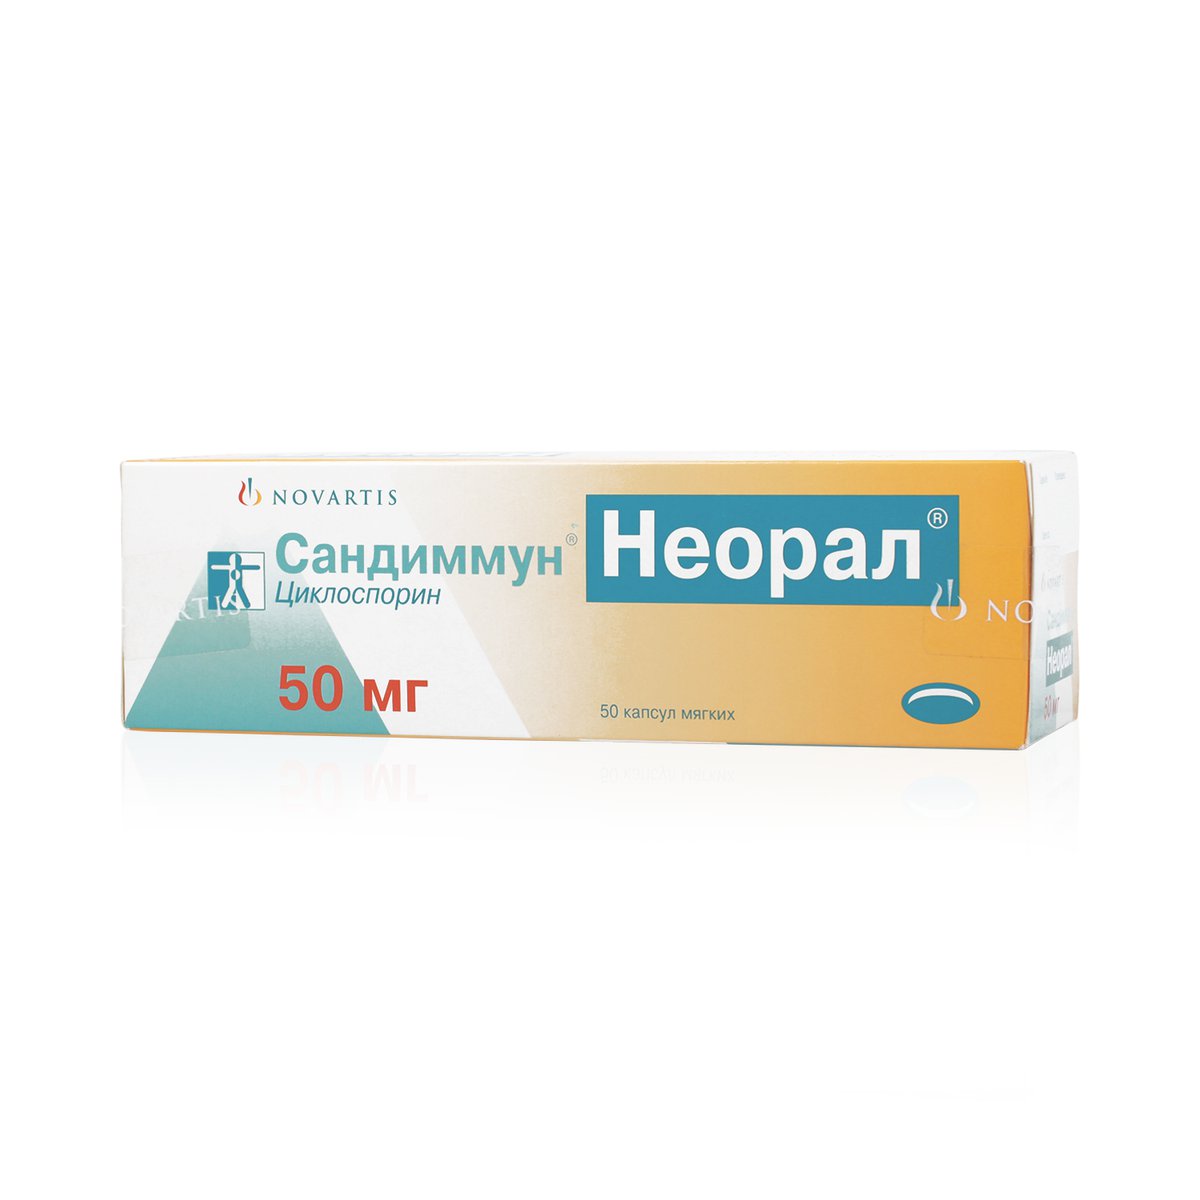 Сандиммун неорал (капсулы, 50 шт, 50 мг) - цена,  онлайн  .